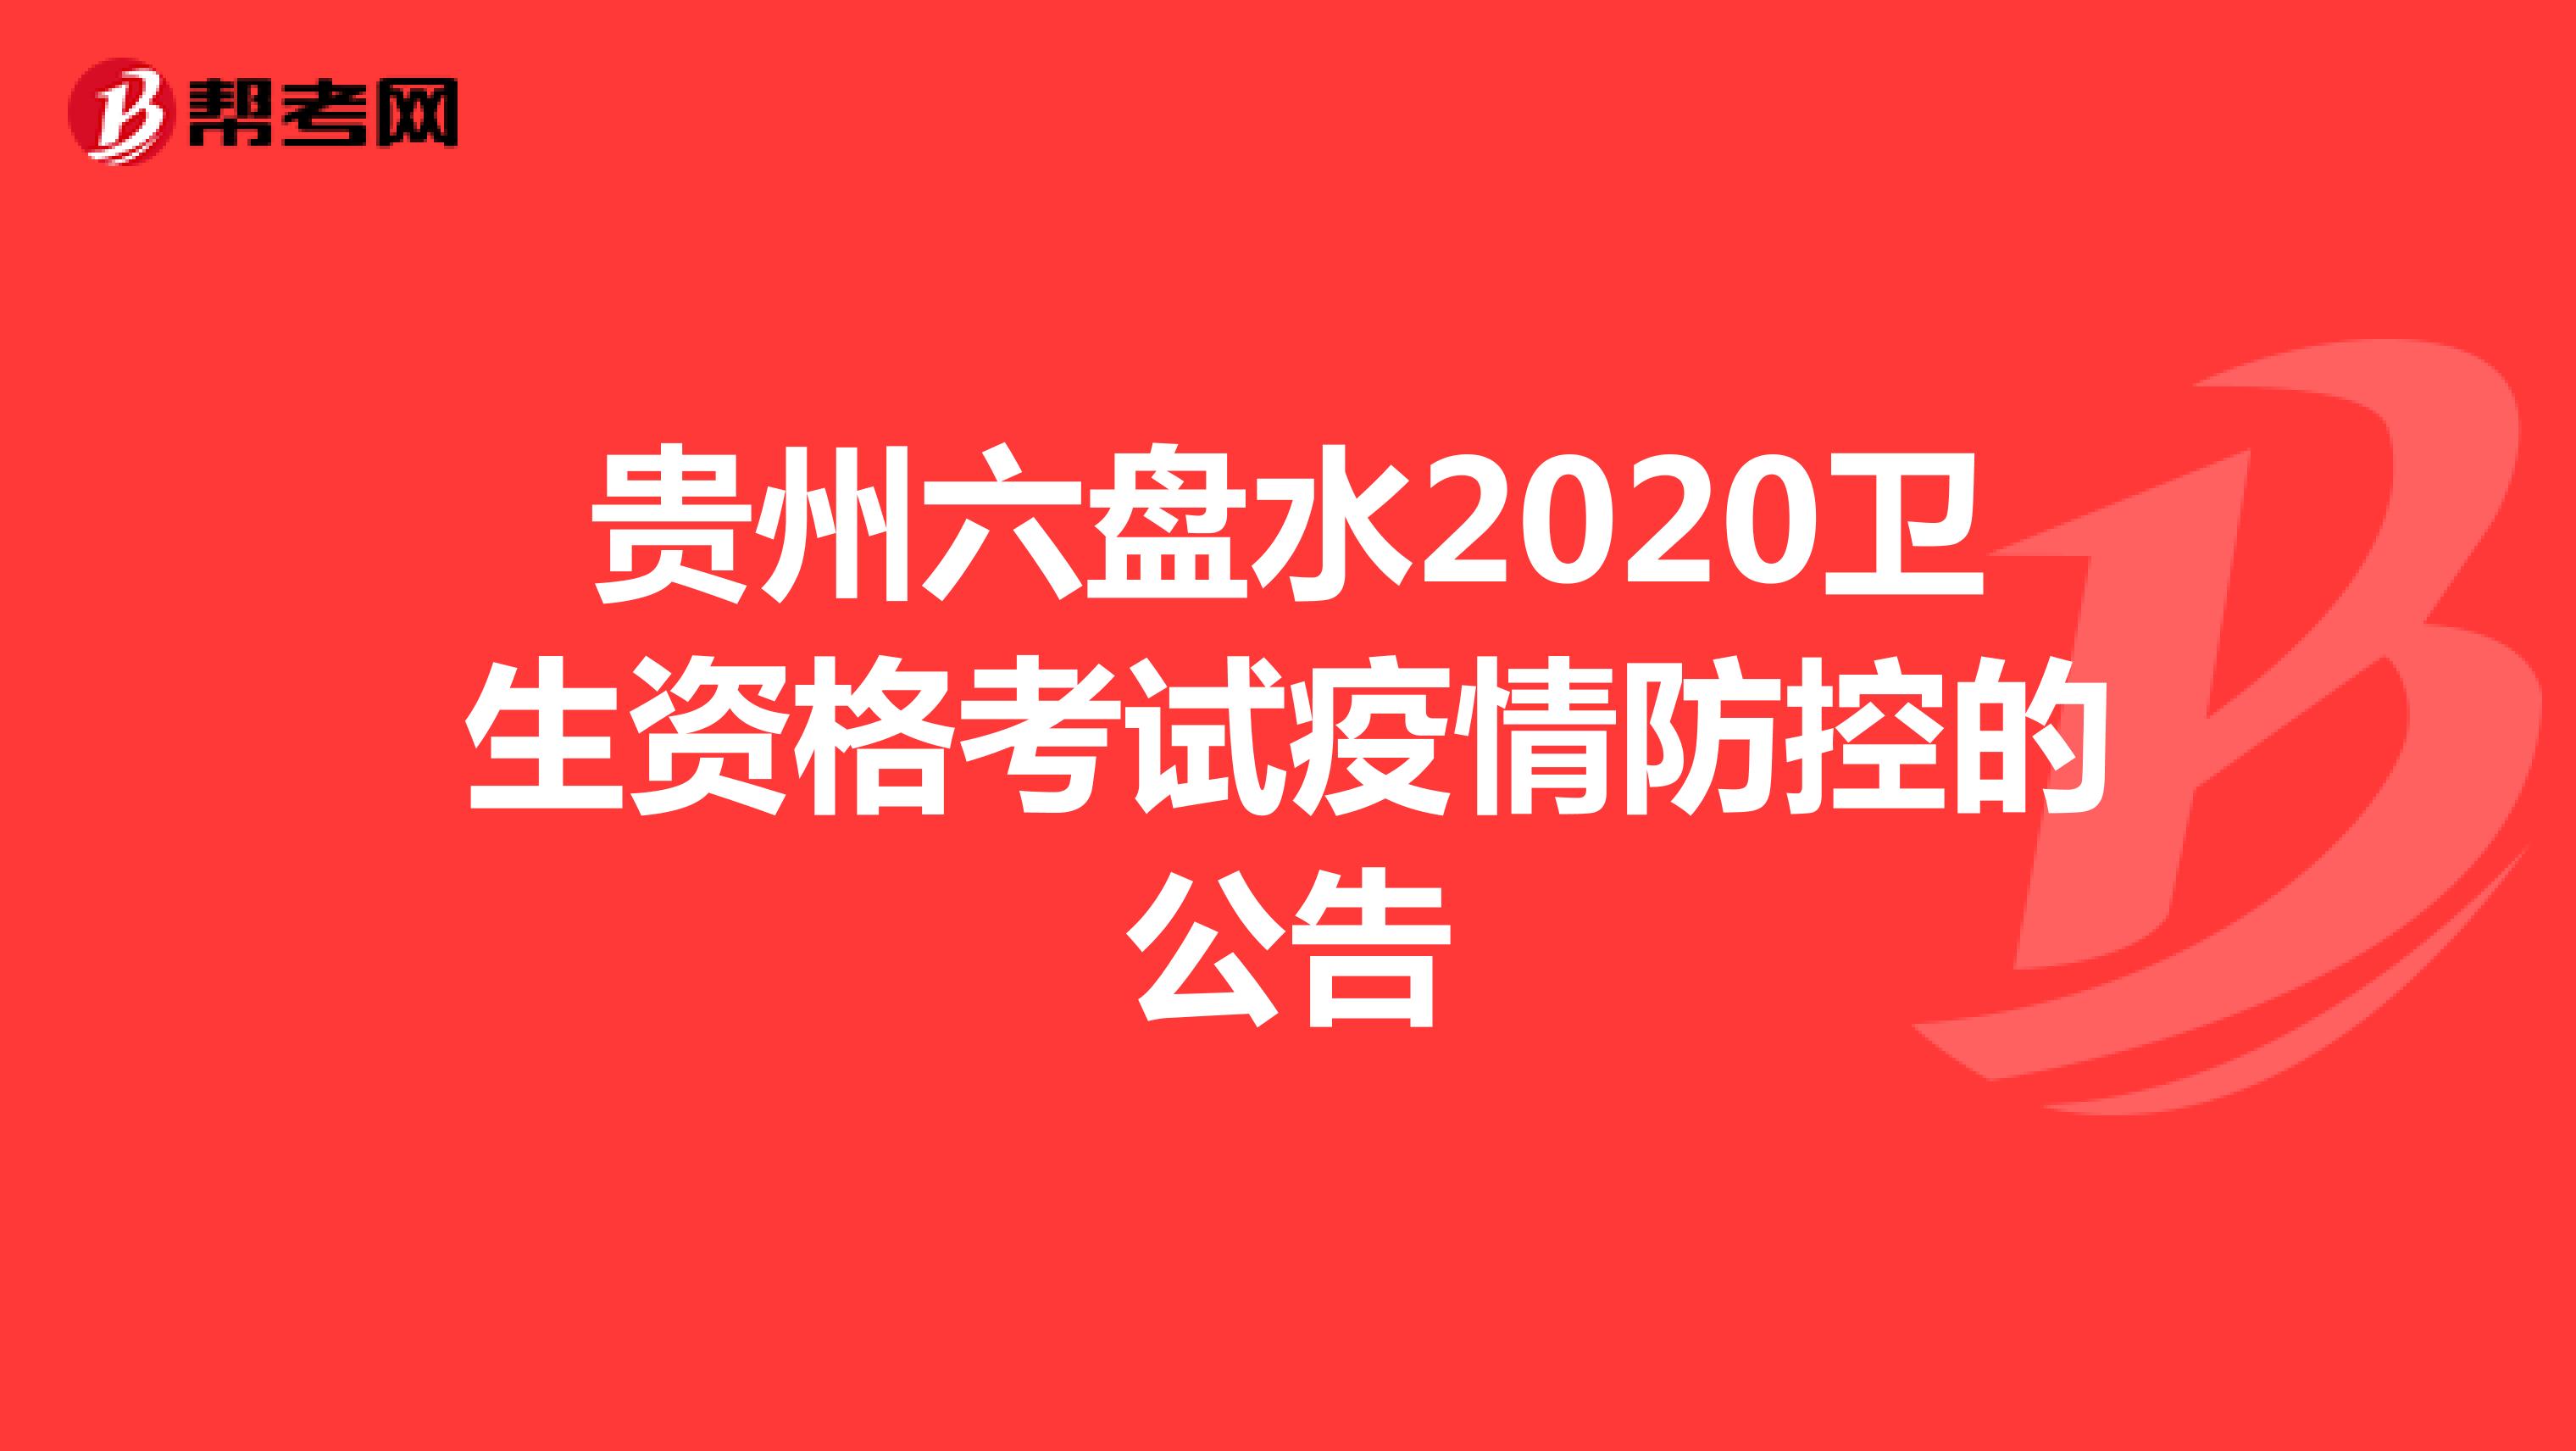 点击浏览：贵州六盘水2020卫生资格考试疫情防控的公告